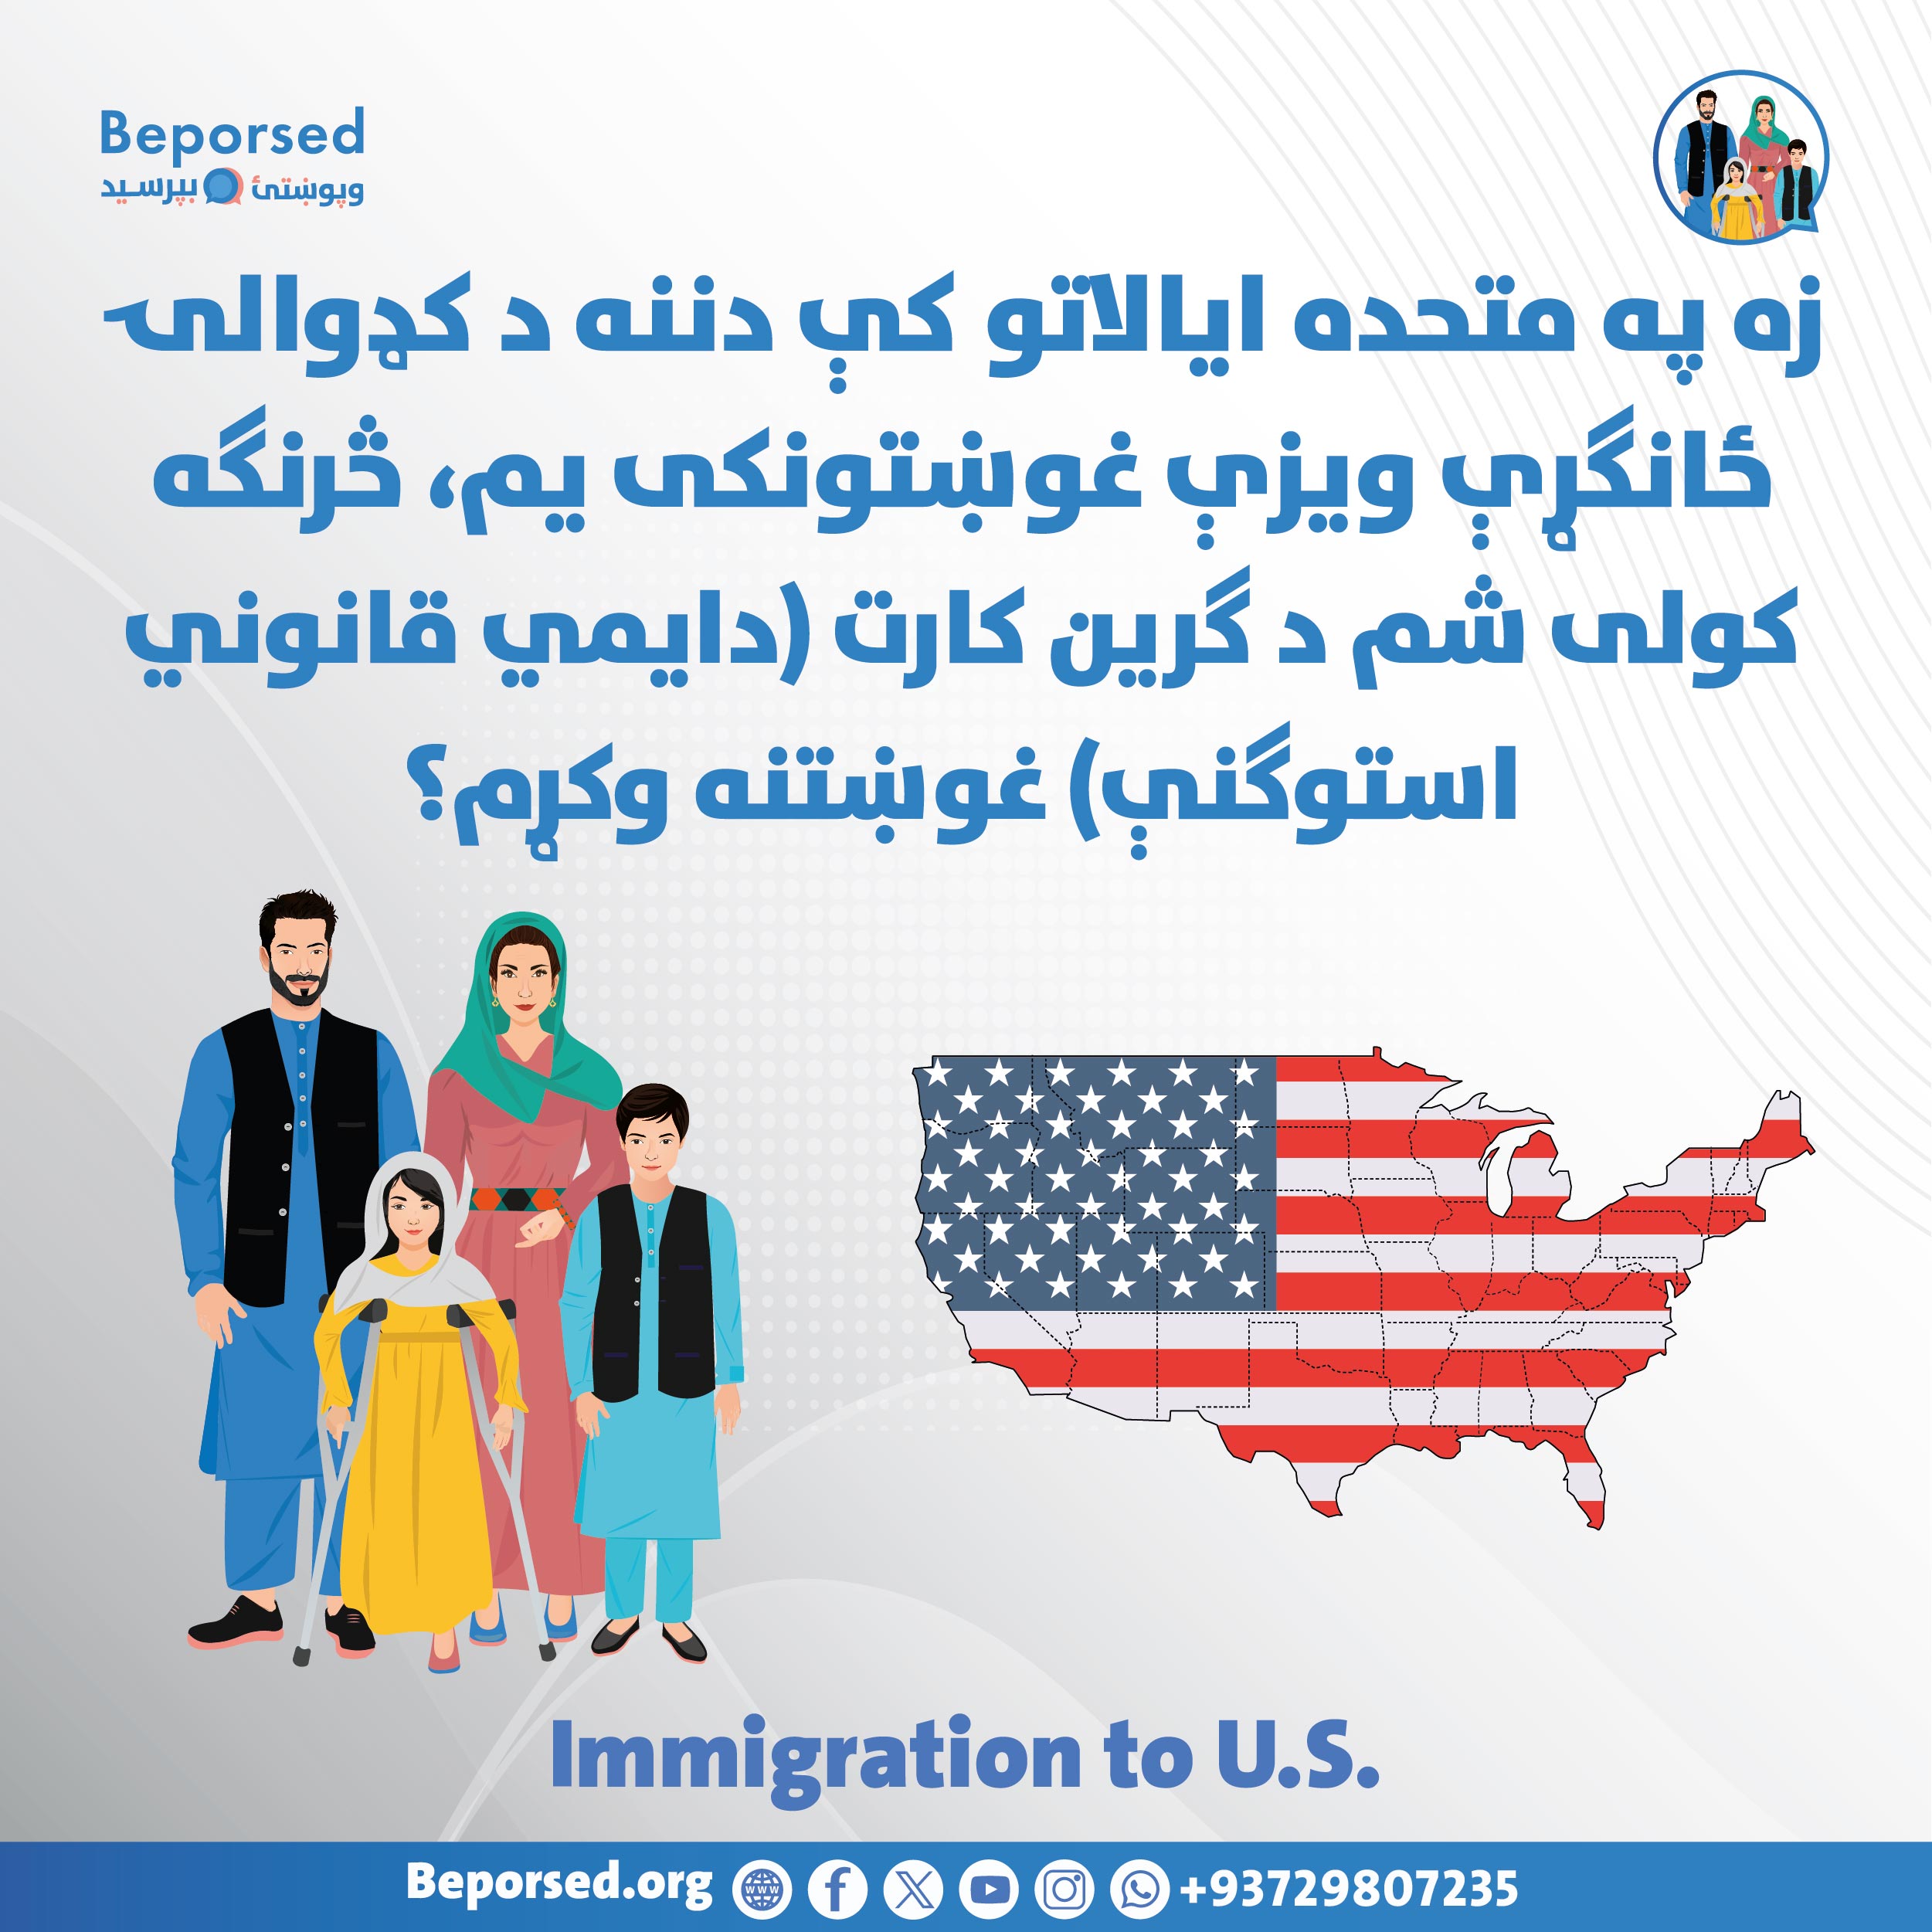 من درخواست کننده ویزه خاص مهاجرت در داخل ایالات متحده هستم، چگونه میتوانم برای دریافت گرین کارت (اقامت قانونی دایمی) درخواست نمایم؟-02.jpg